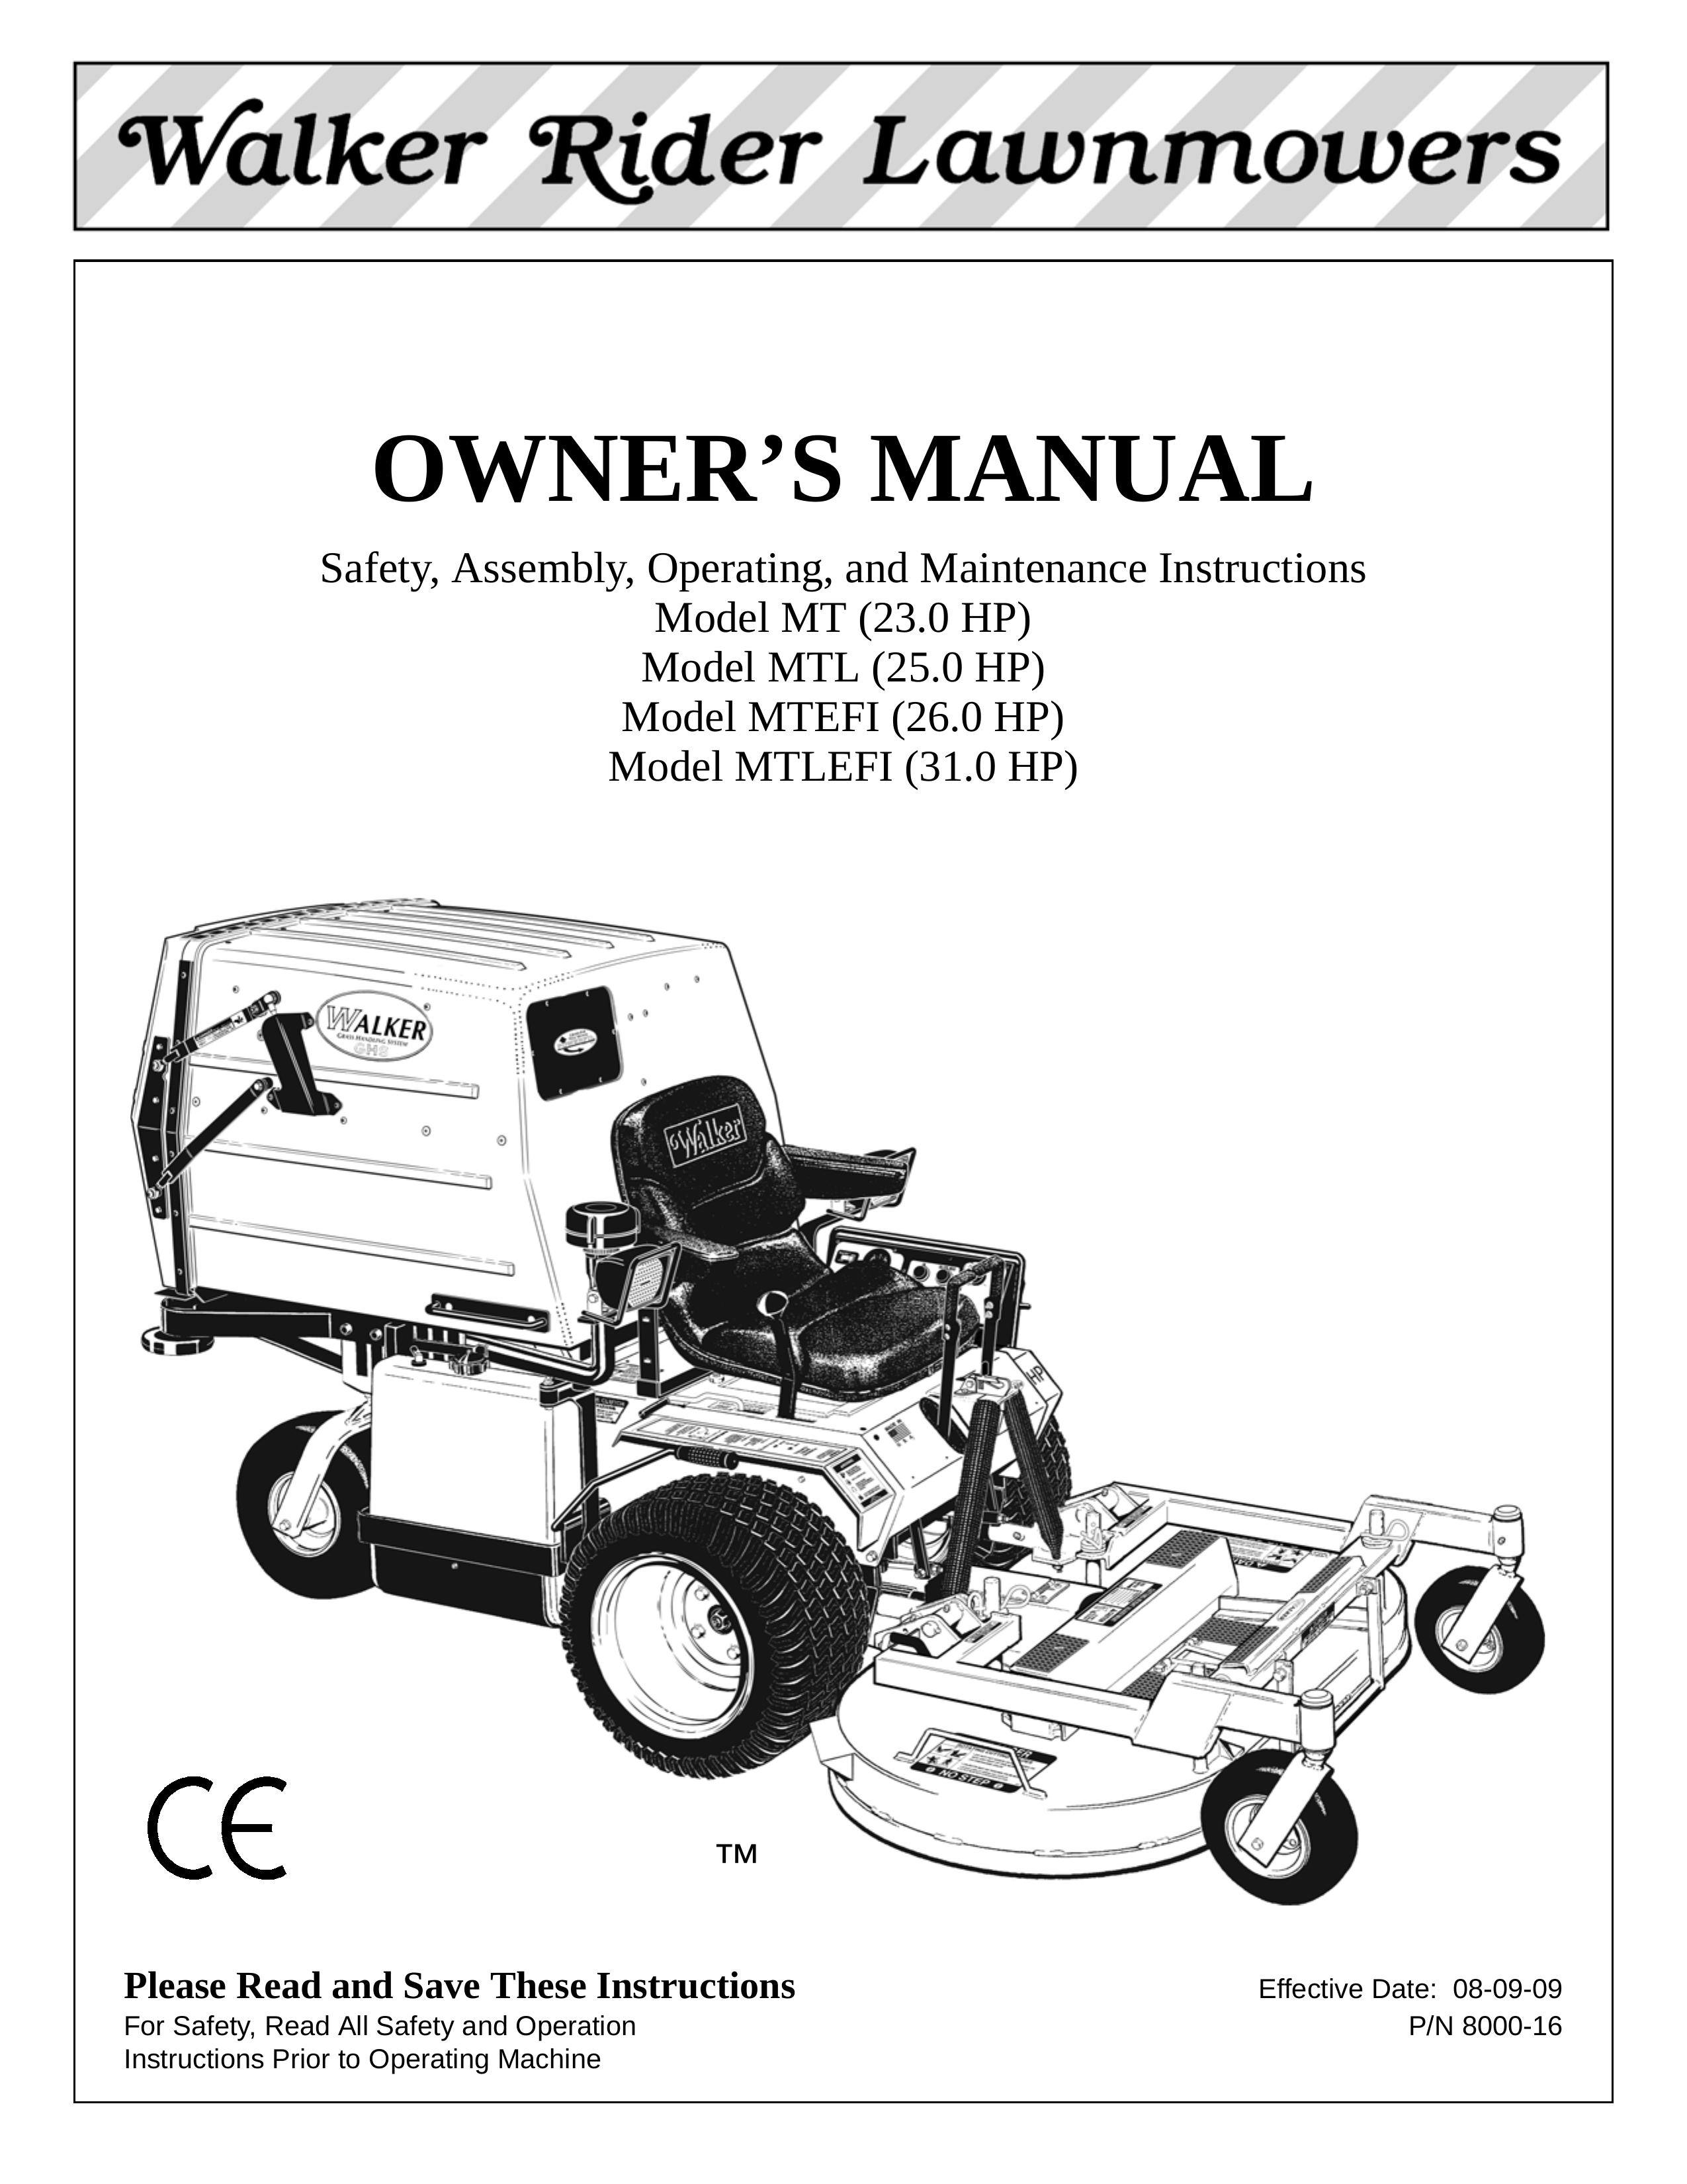 Walker Model MT Lawn Mower User Manual